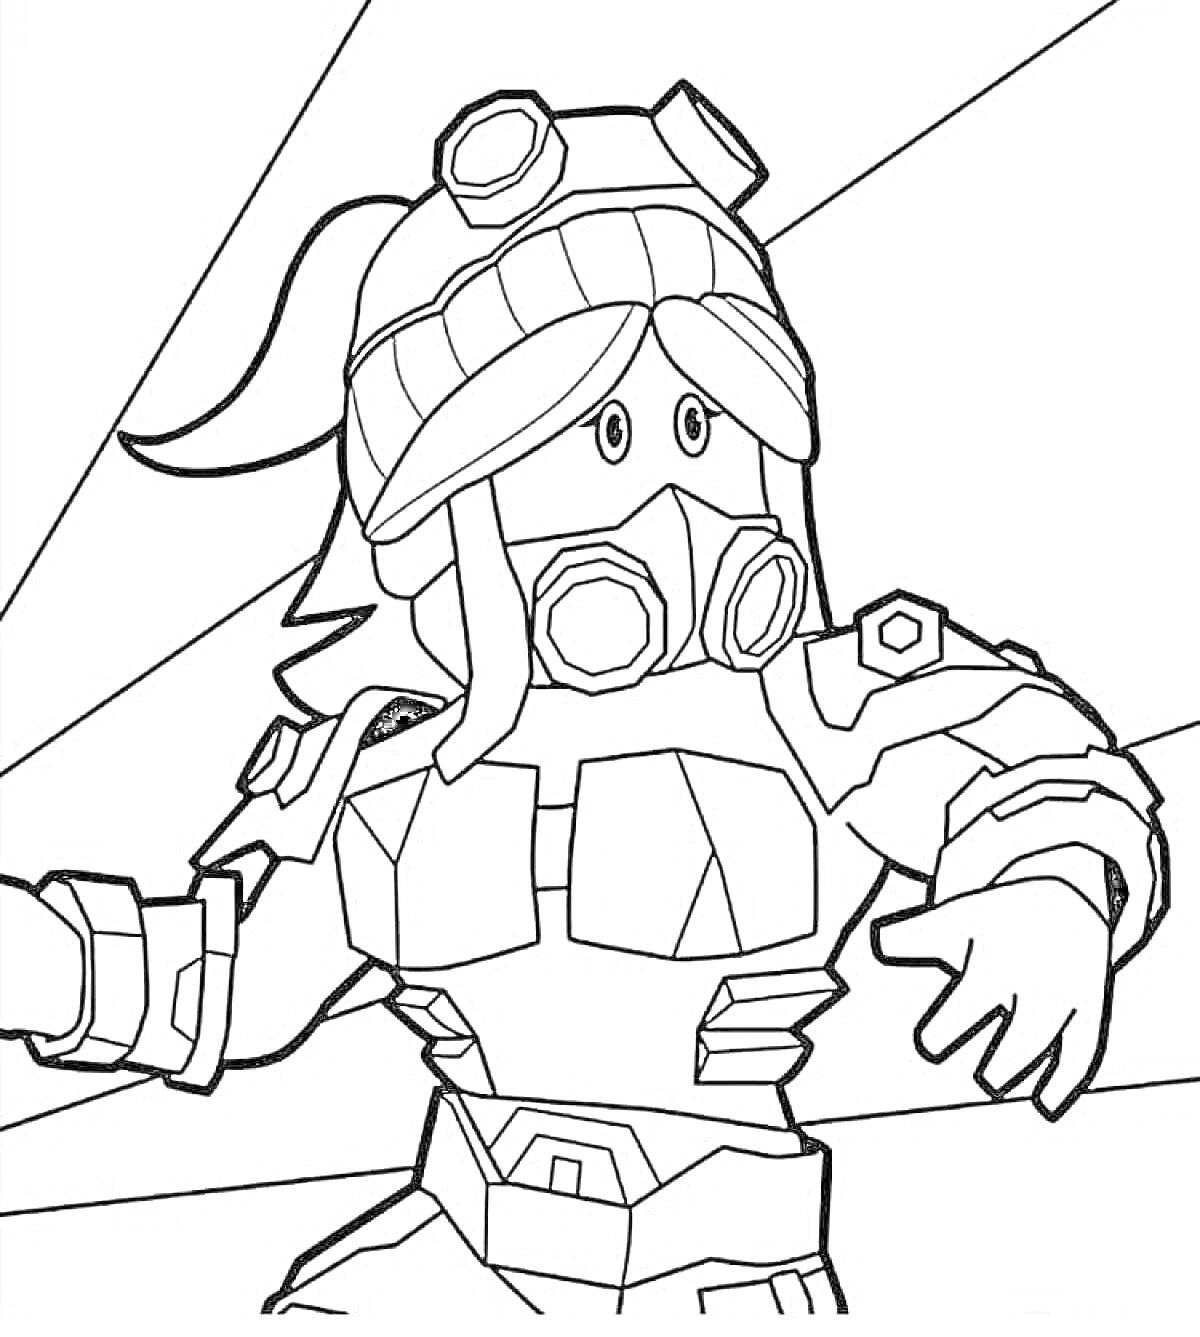 Персонаж Роблокс в защитной маске и шлеме с очками, с поднятой рукой в броне, на фоне лучей света